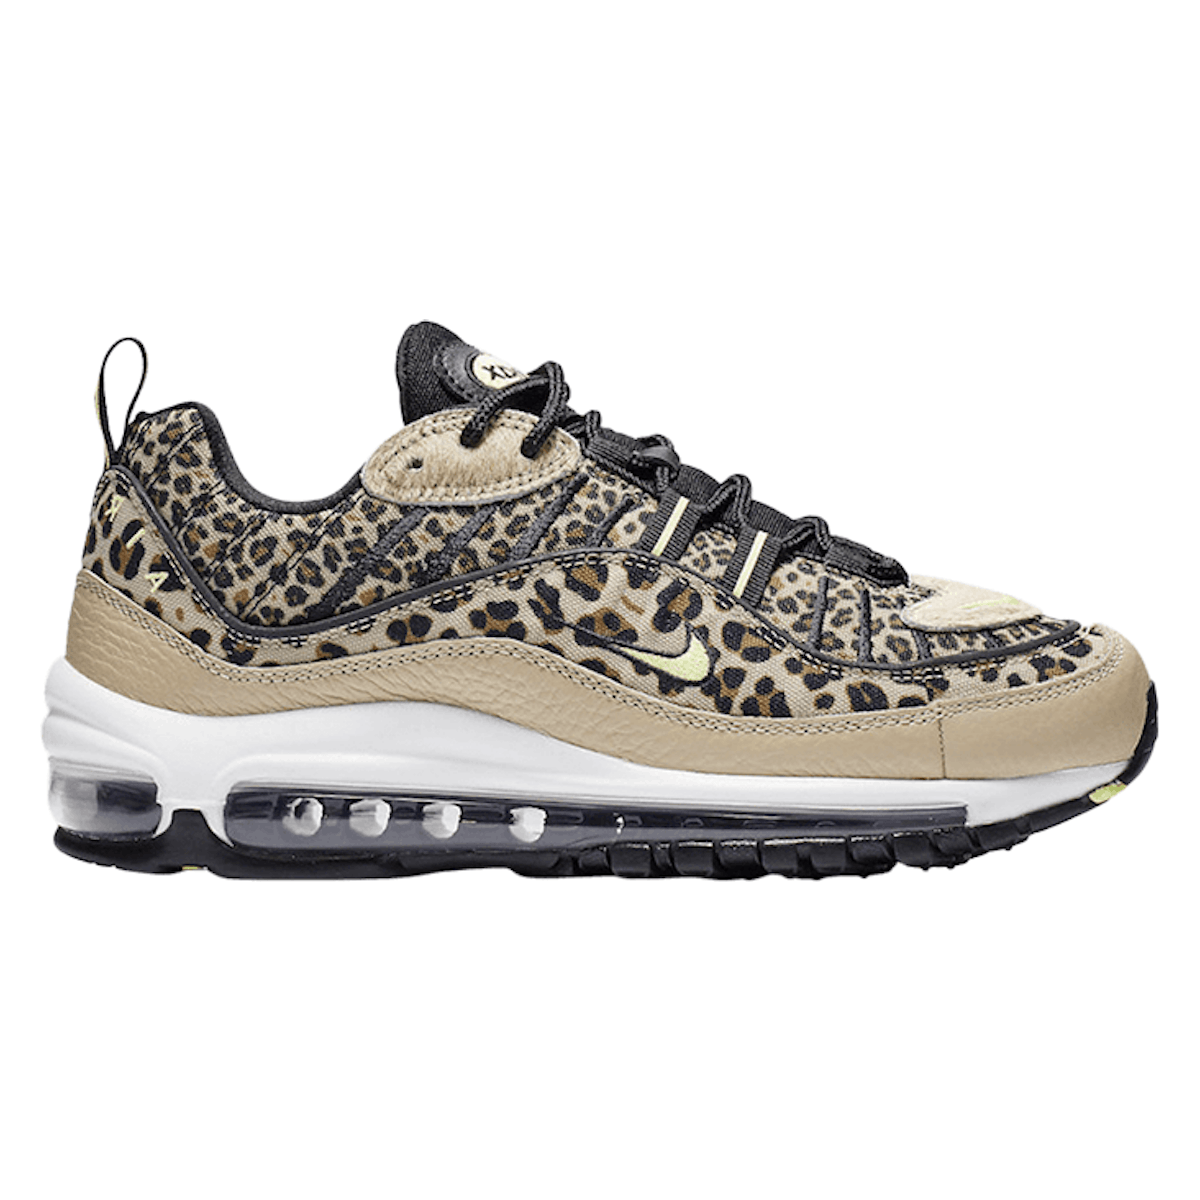 Nike Air Max 98 WMNS "Leopard"